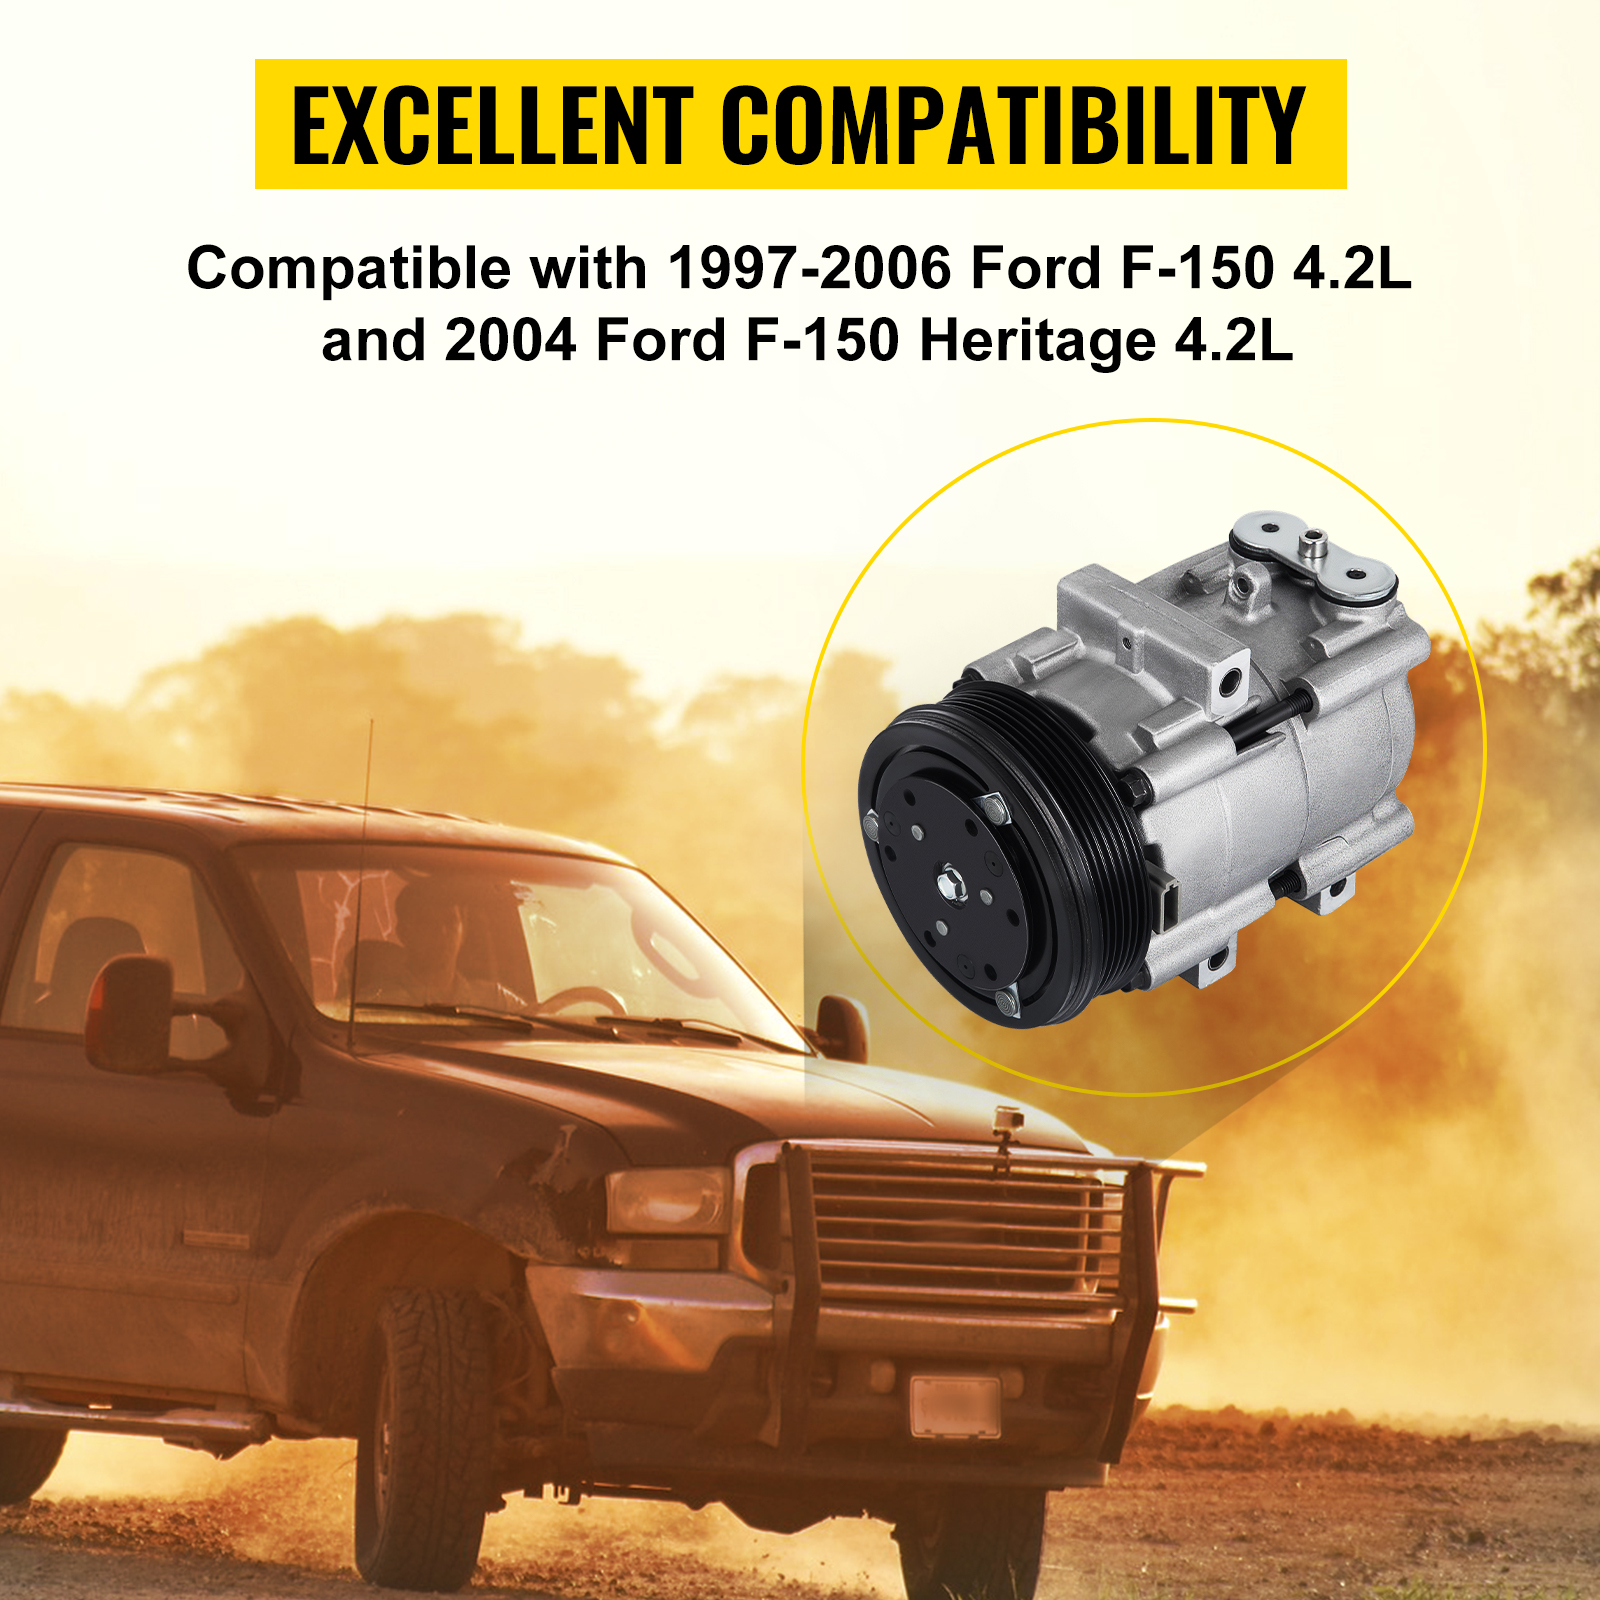 A/C Compressor w/ Clutch 58151 FS10 Fit 97-06 Ford F-150 4.2L 4.6L 5.4L